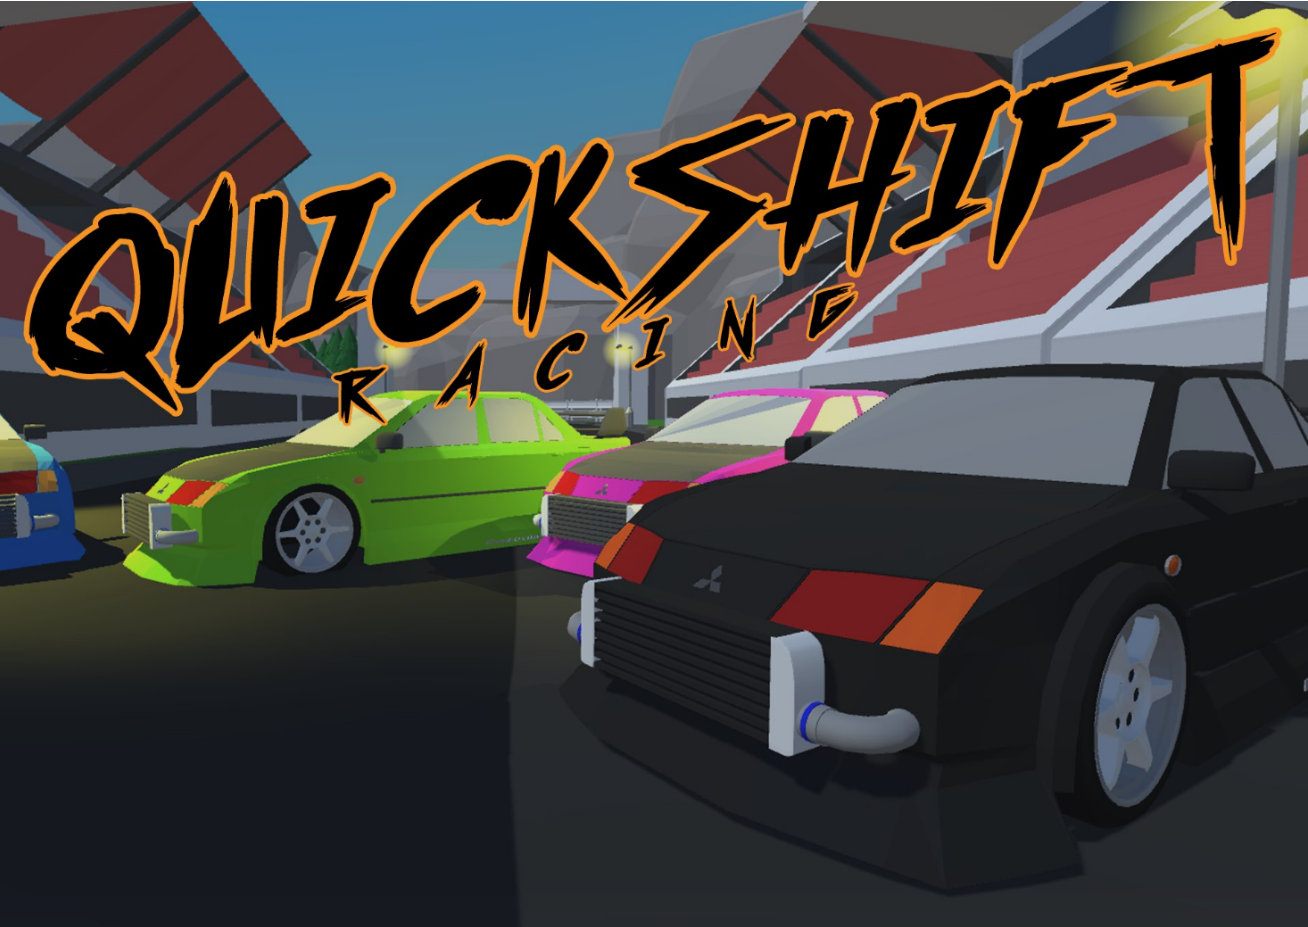 Quickshift Racing